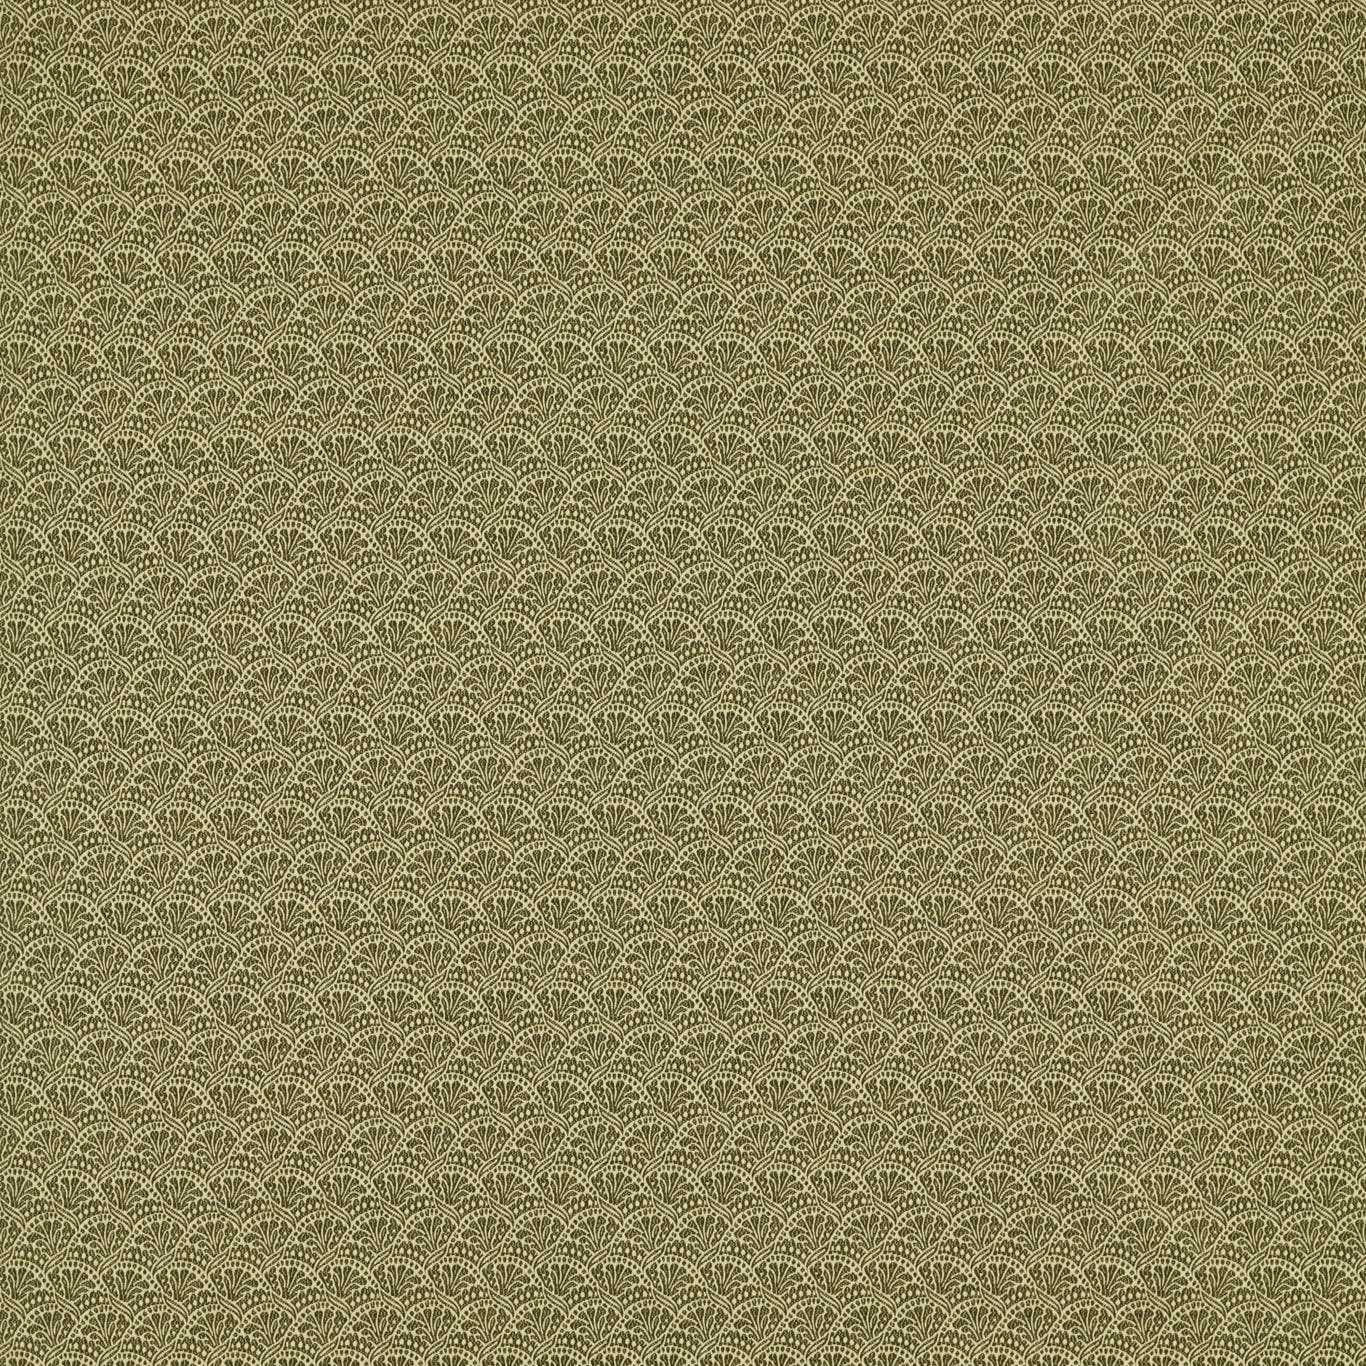 Tudor Damask Olivine Fabric by ZOF